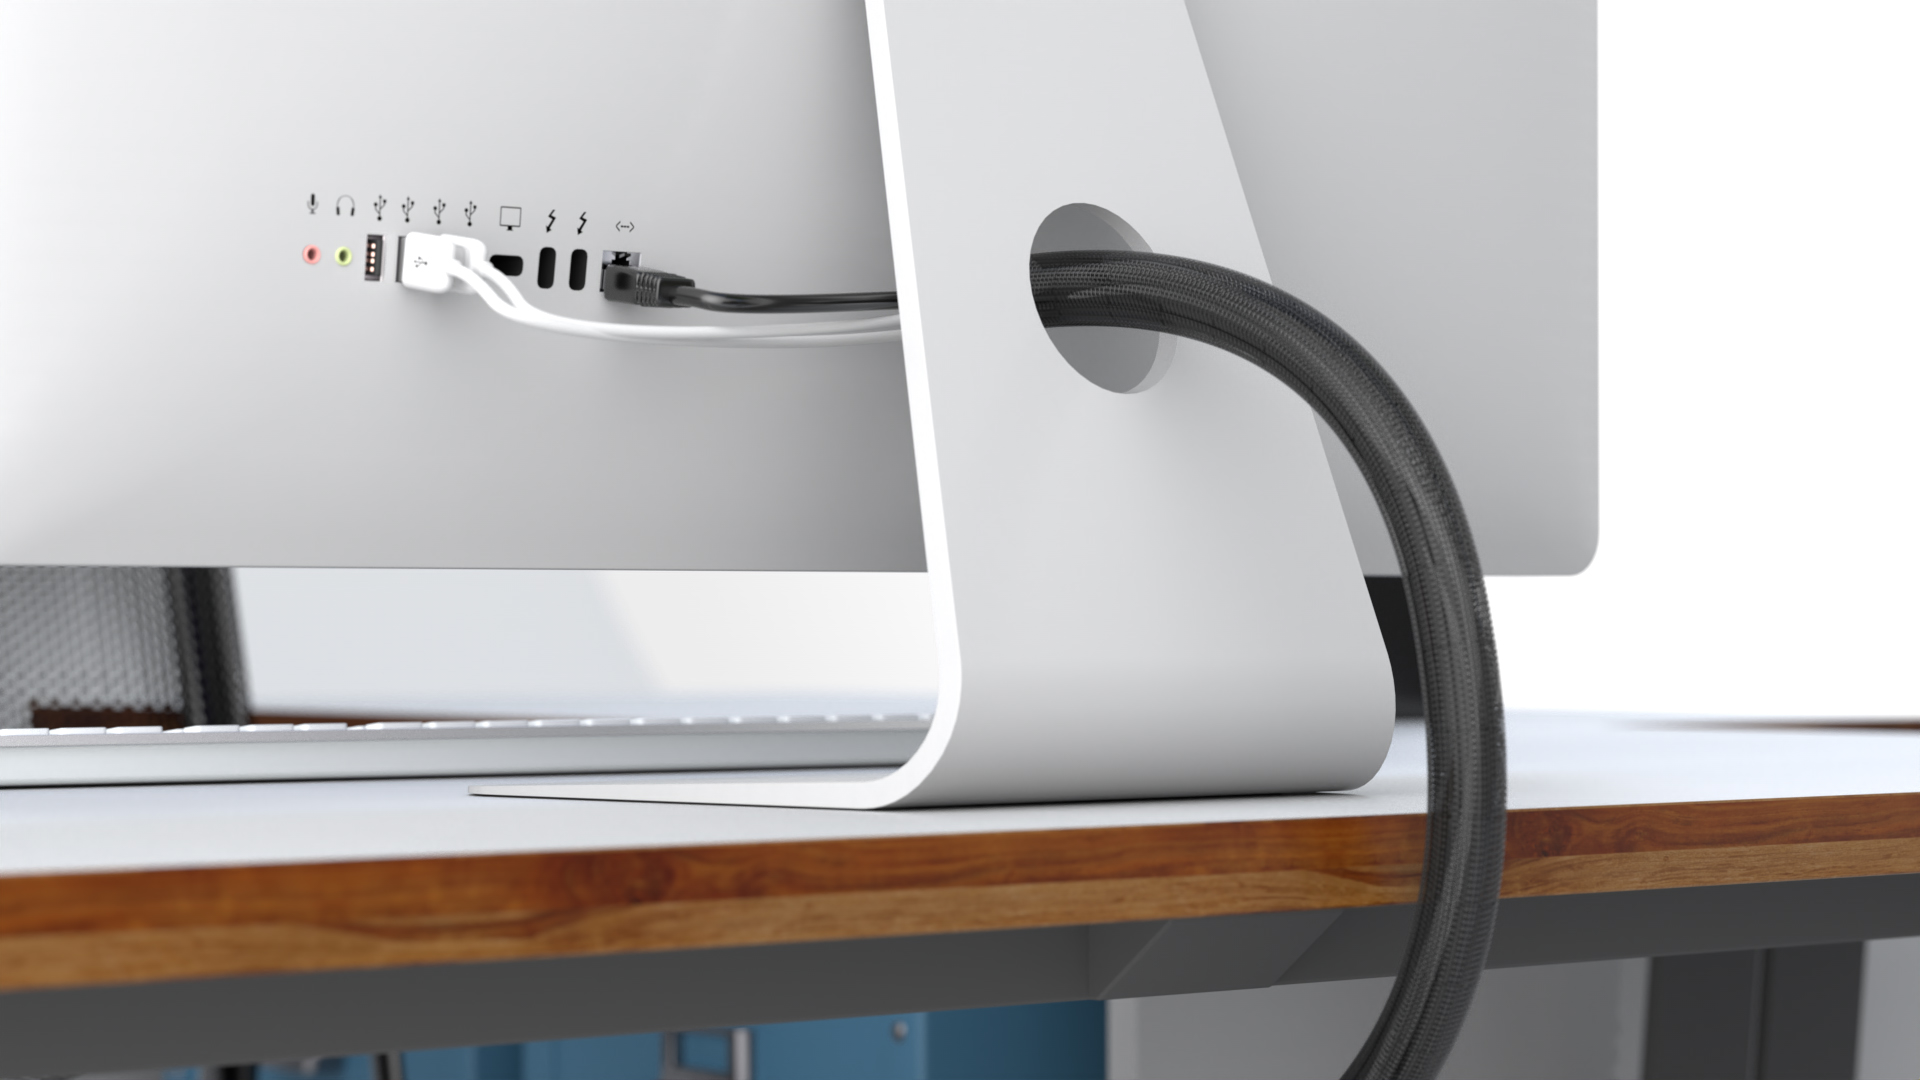 Ein iMac Rechner mit zwei USB Kaeln und einem LAN Kabel. Die kabel sind mit einem kabelschlauch zusammengehalten. Das Gerät steht auf einem Schreibtisch mit Holz-Optik. Daneben ist eine tastatur und ein Büro-Stuhl zu sehen. Das Bild wurde mit Cinema 4D und ProRender gerendert und war teil eines Kundenauftrags zur 3D-Visualisierung von Lösungen für Kabelsortierungen.